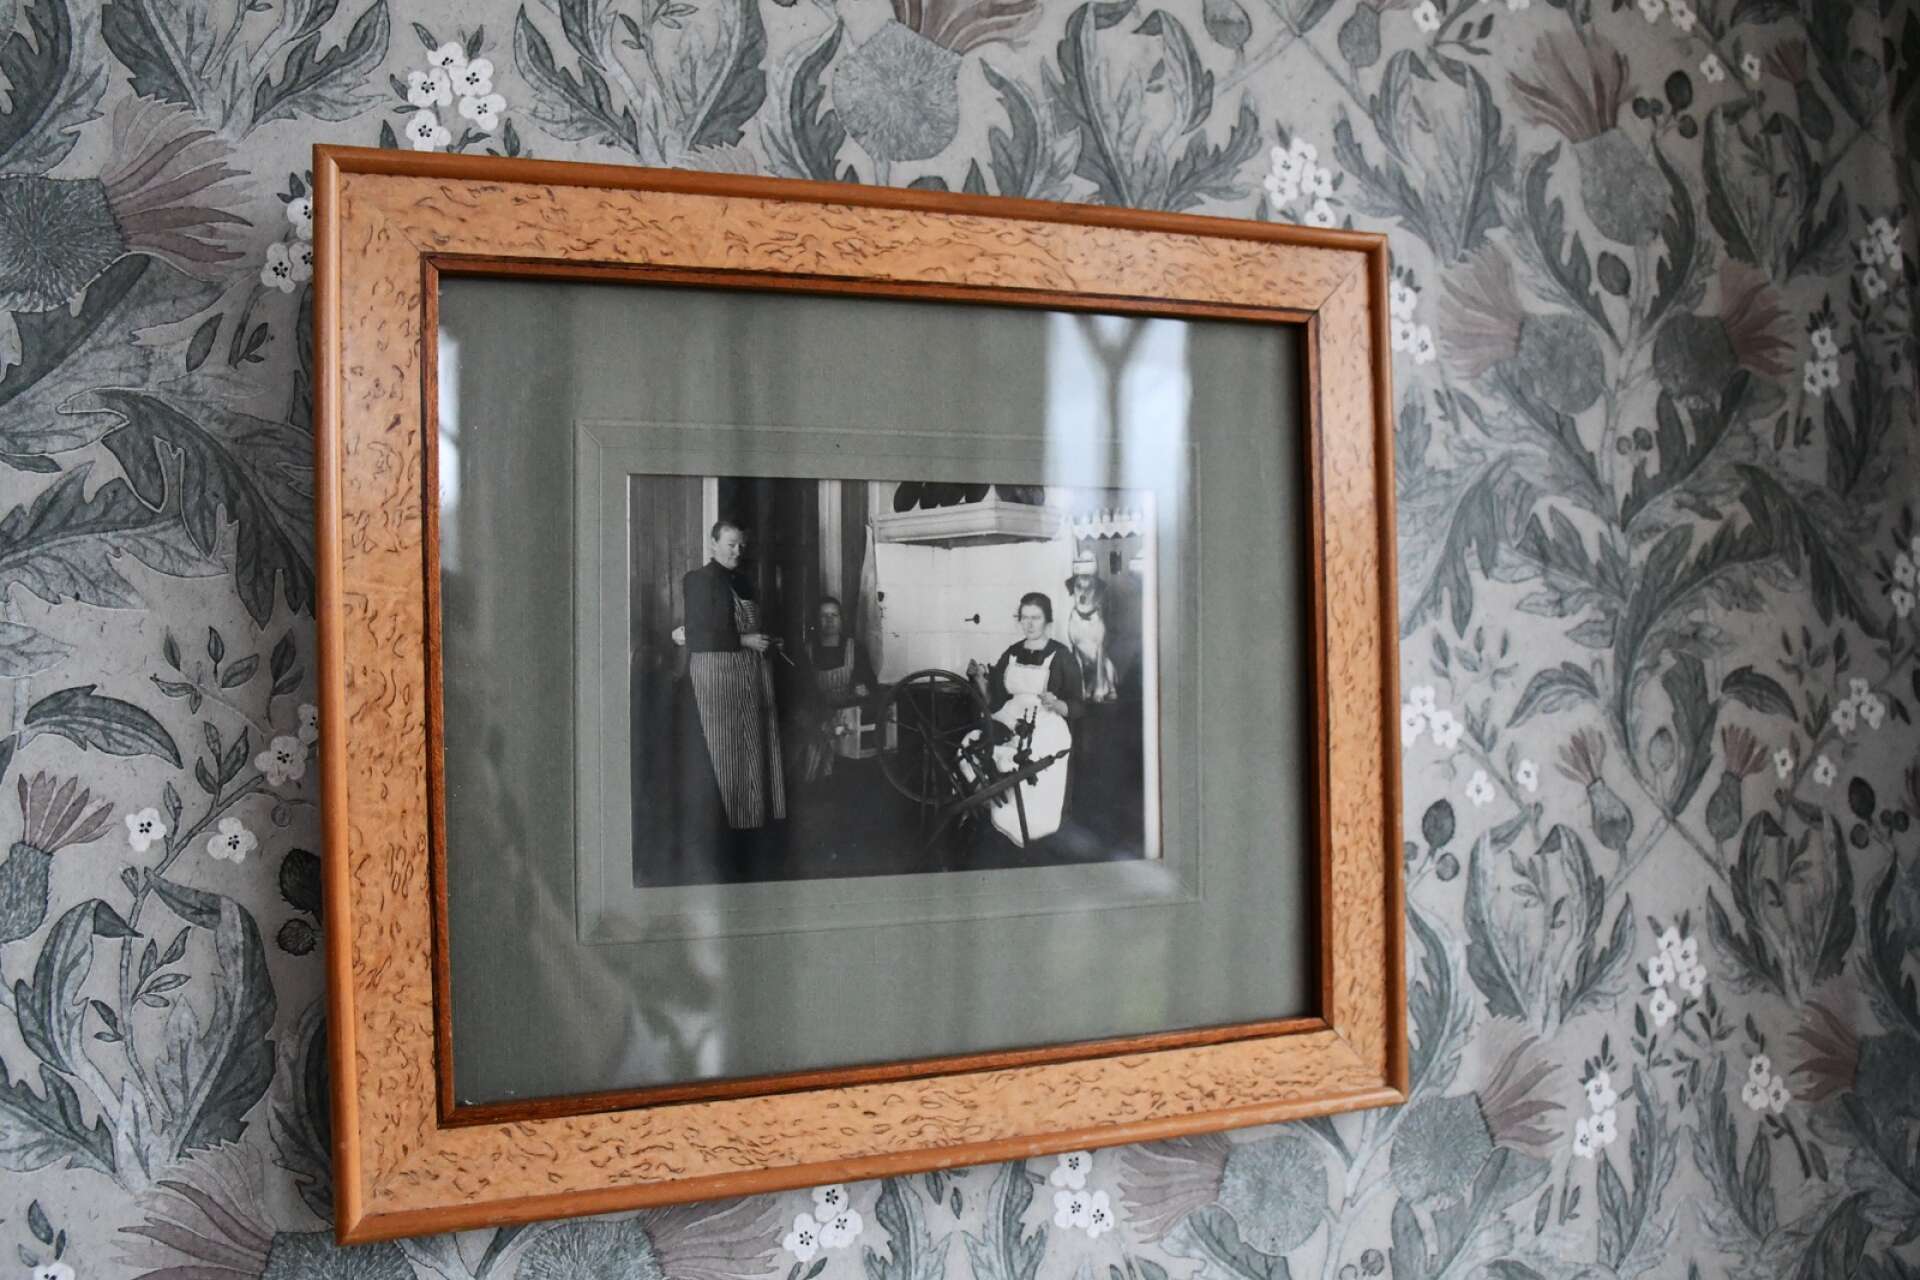 En bild av Maria som tidigare bodde i huset har tagits till vara och gjorts till en tavla.